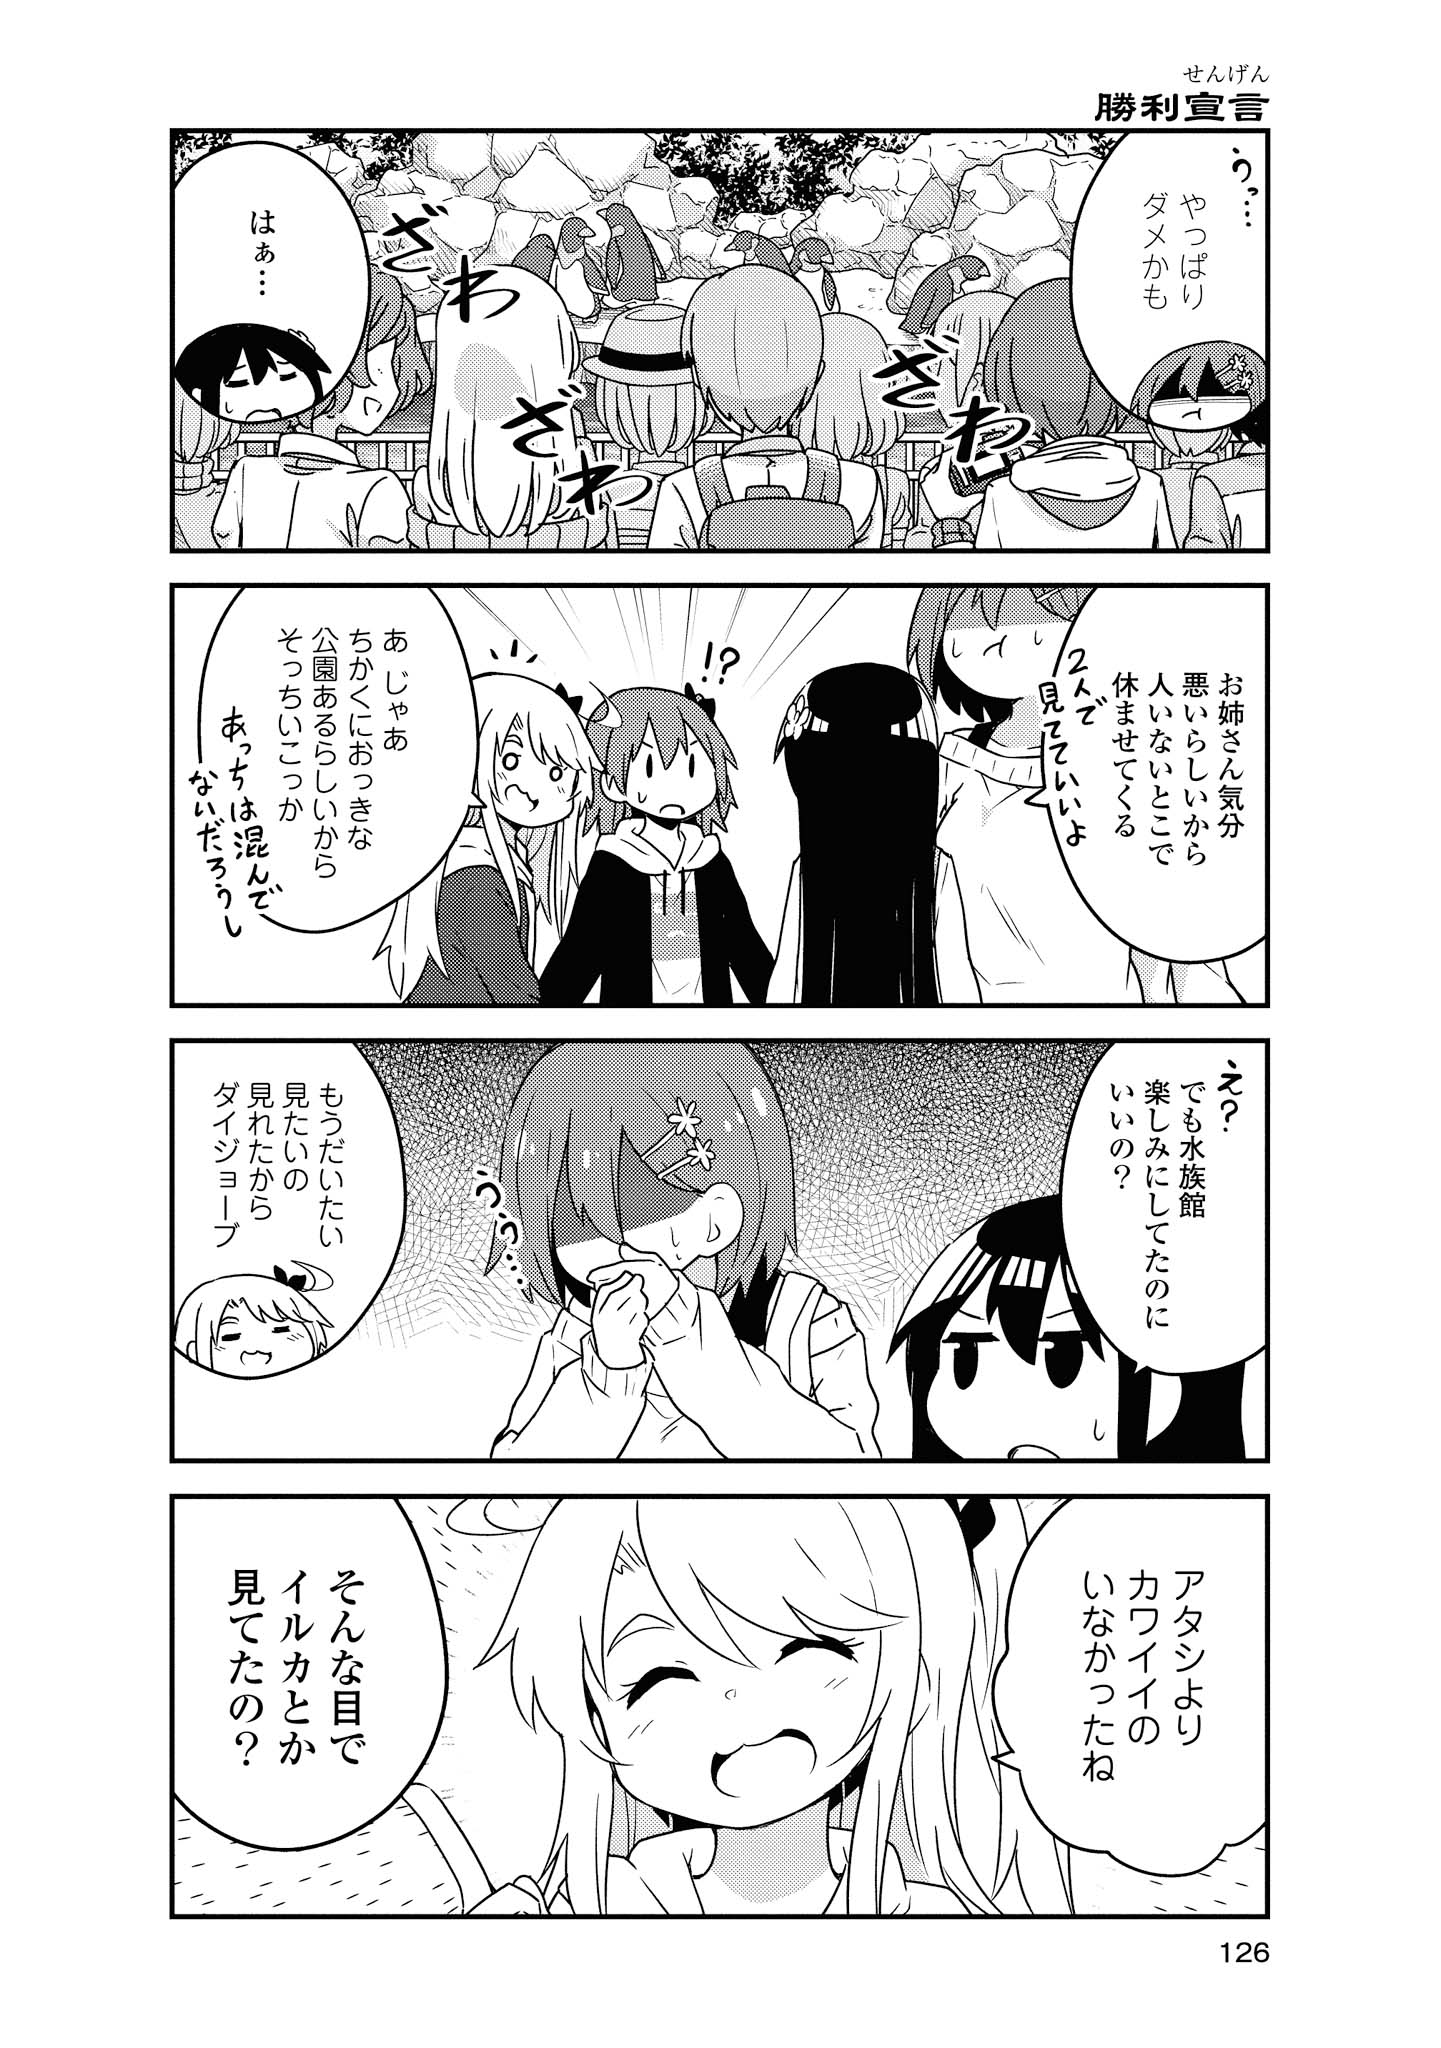 Watashi ni Tenshi ga Maiorita! - Chapter 60 - Page 2